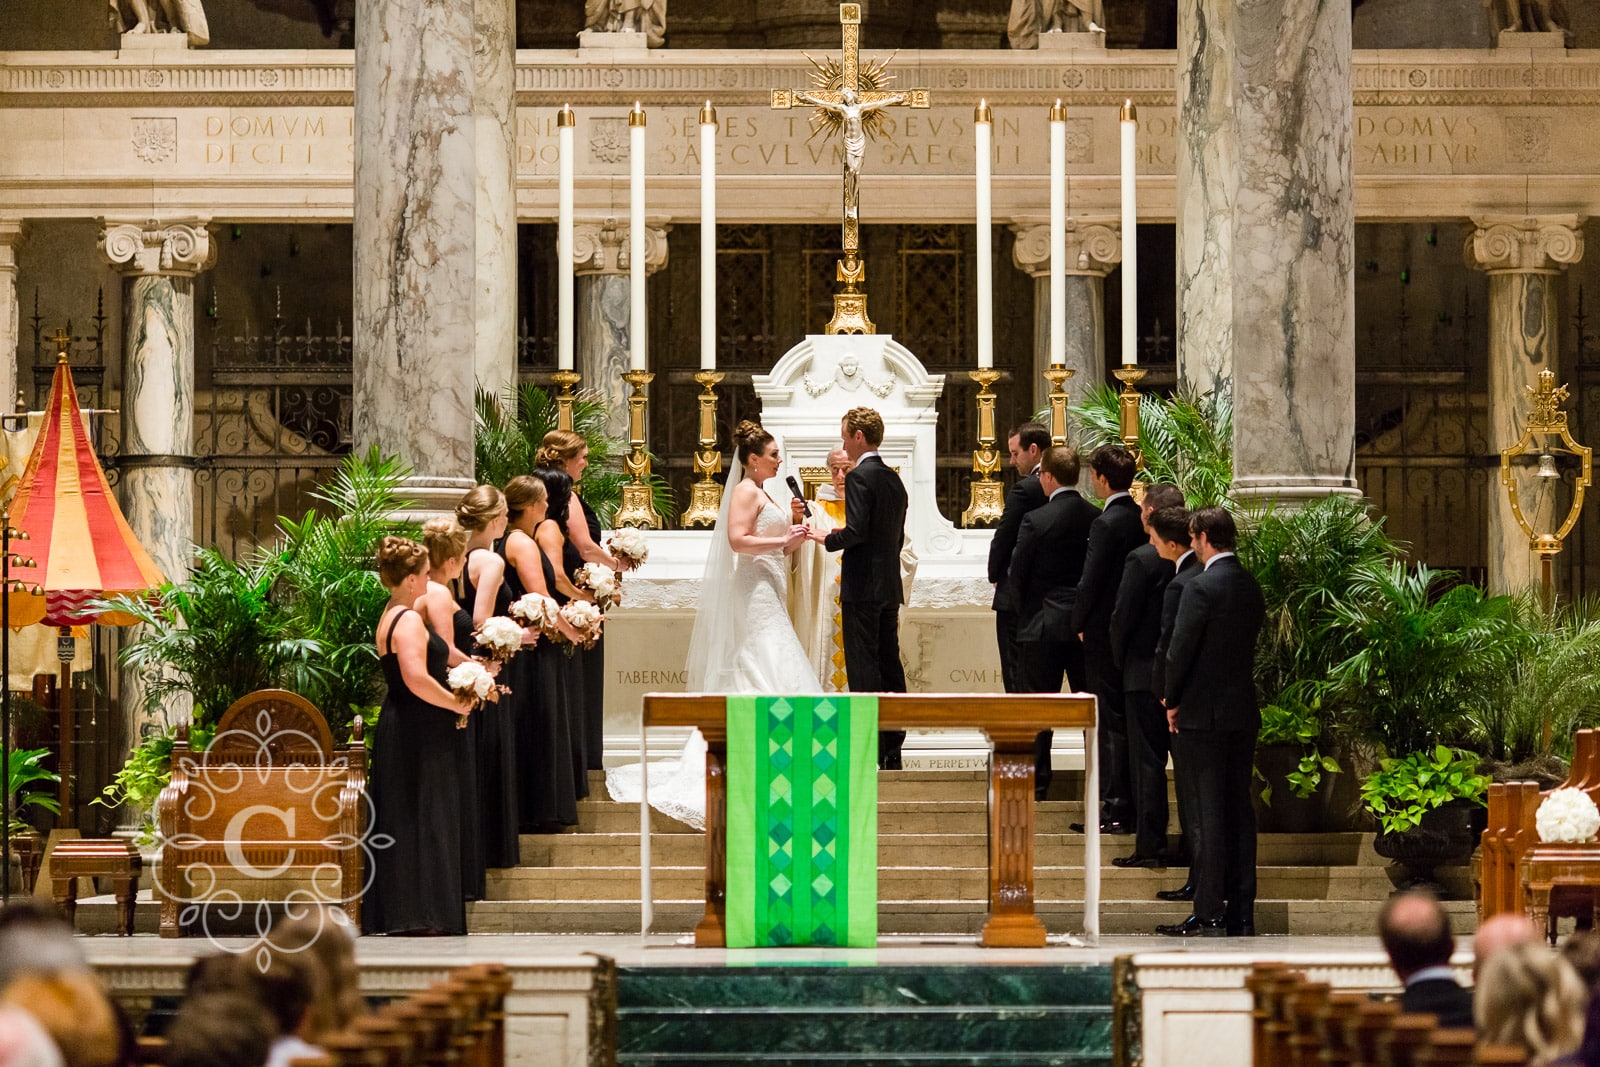 Minneapolis Basilica Wedding Photo